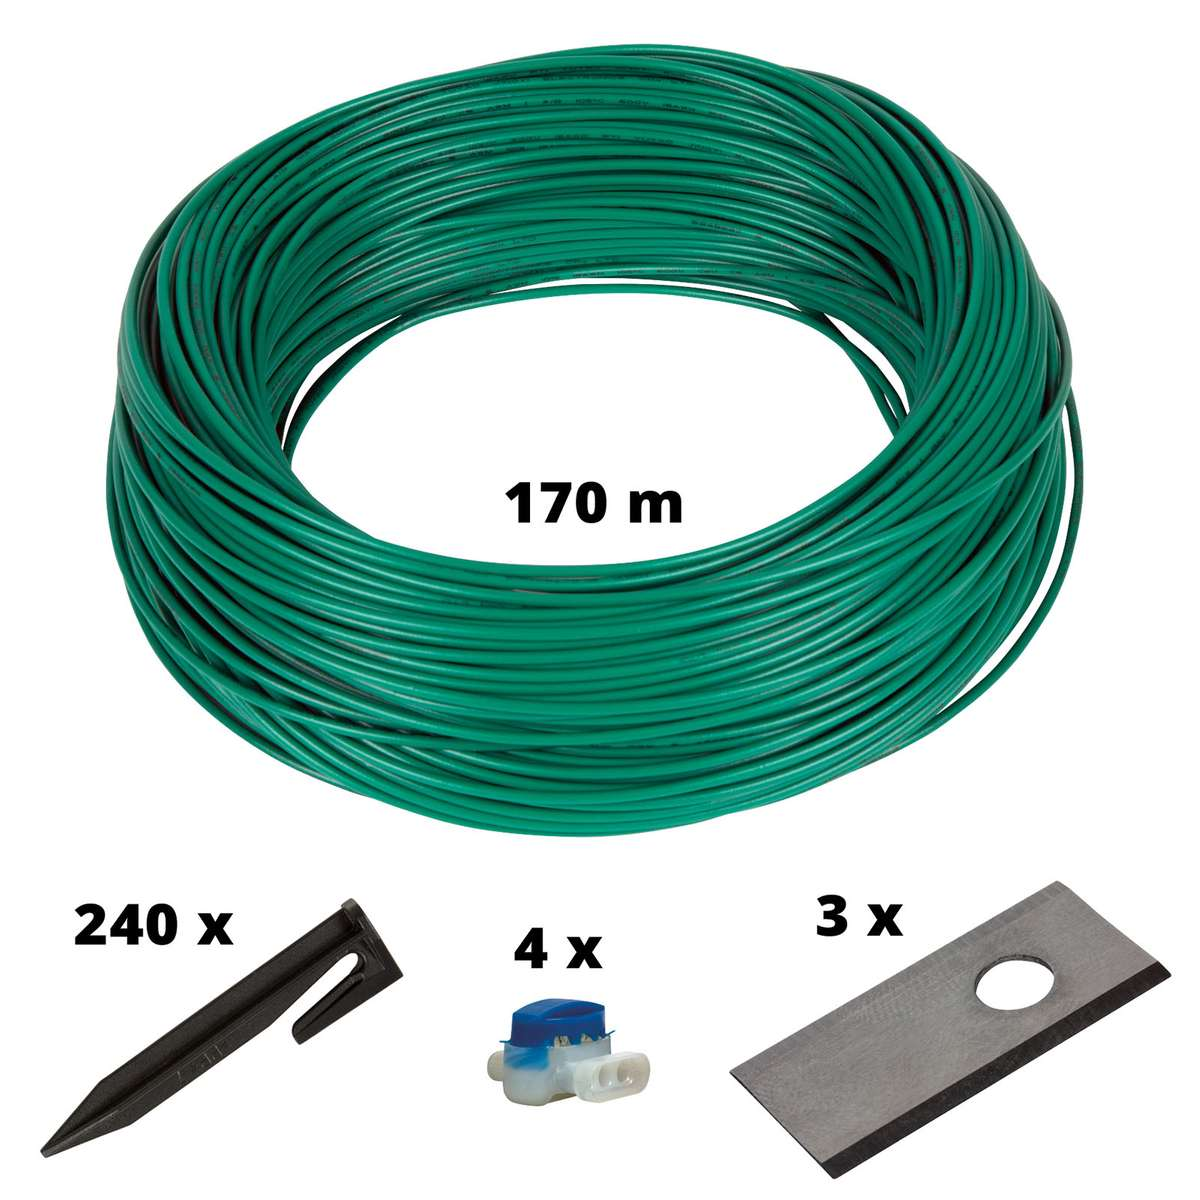 EINHELL Cable Kit 700m2 Mähroboter-Zubehör, Mehrfarbig